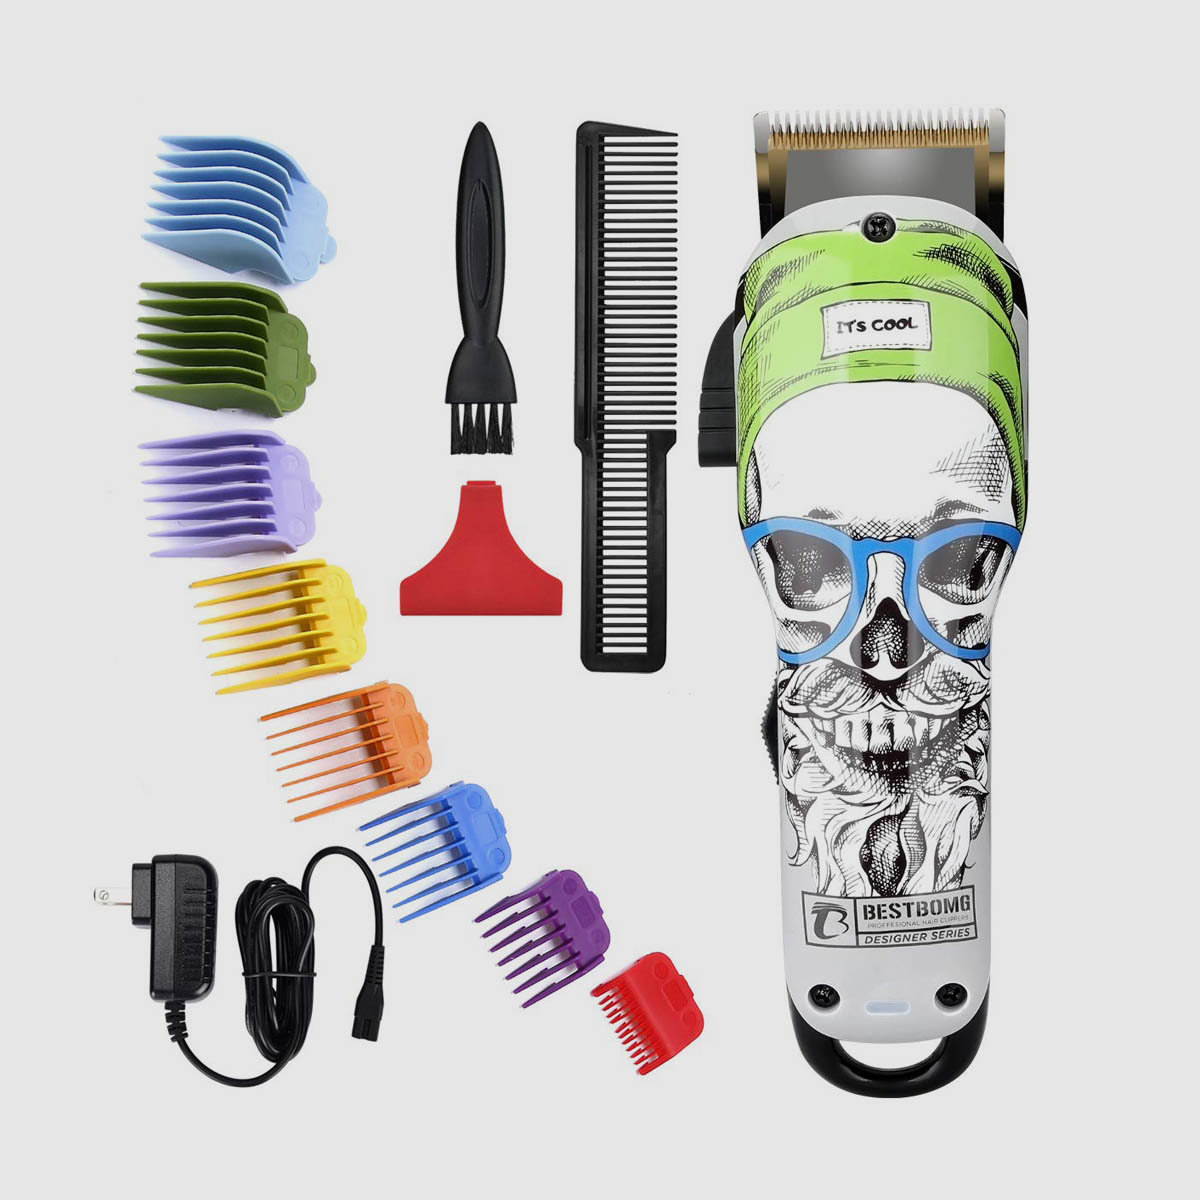 BESTBOMG-4YT-X9 2000mAh Hair Beard Trimmer Hair Cutting Kit